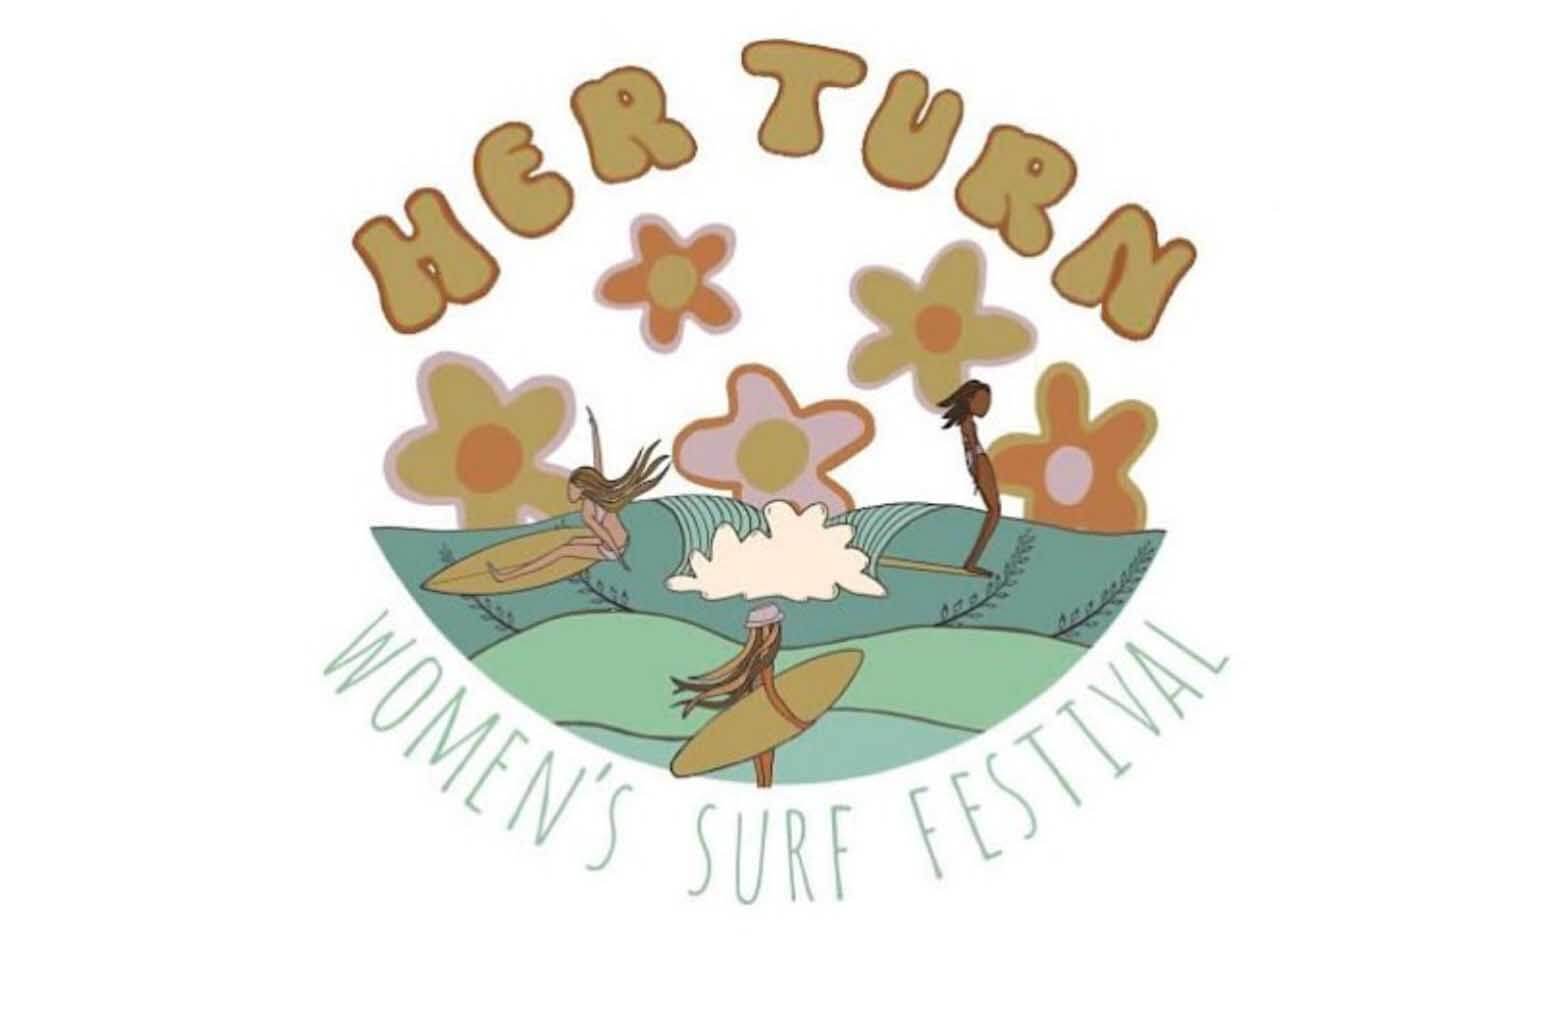 Her Turn Womens Surf Festival